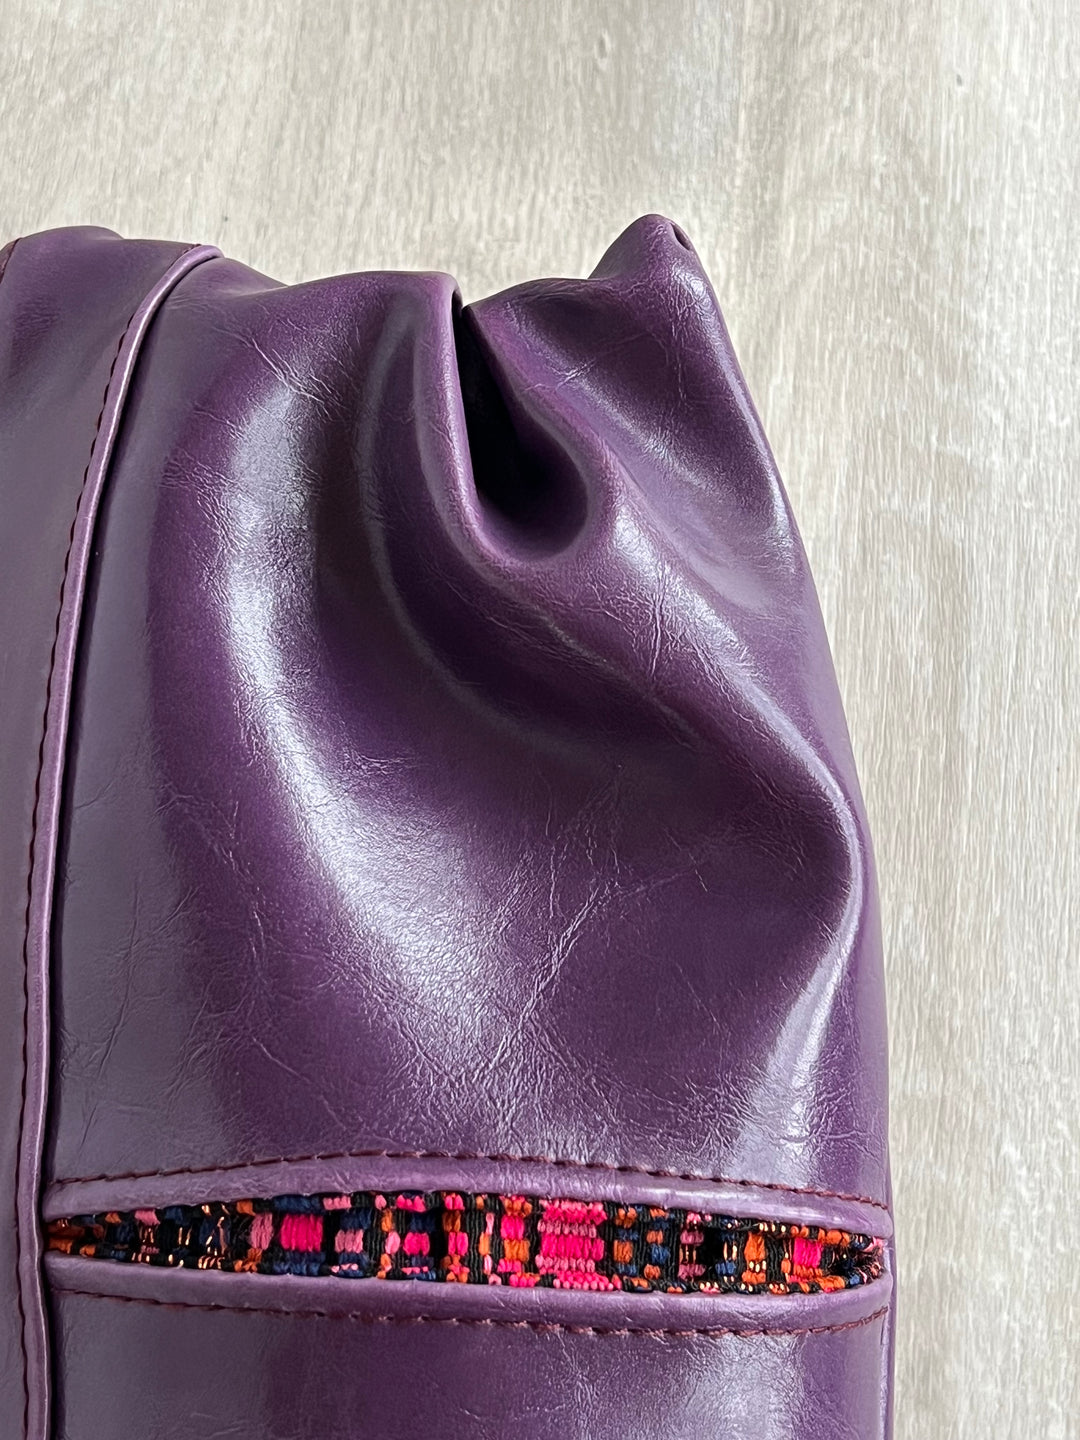 Pleated Clutch - Purple Vegan Leather